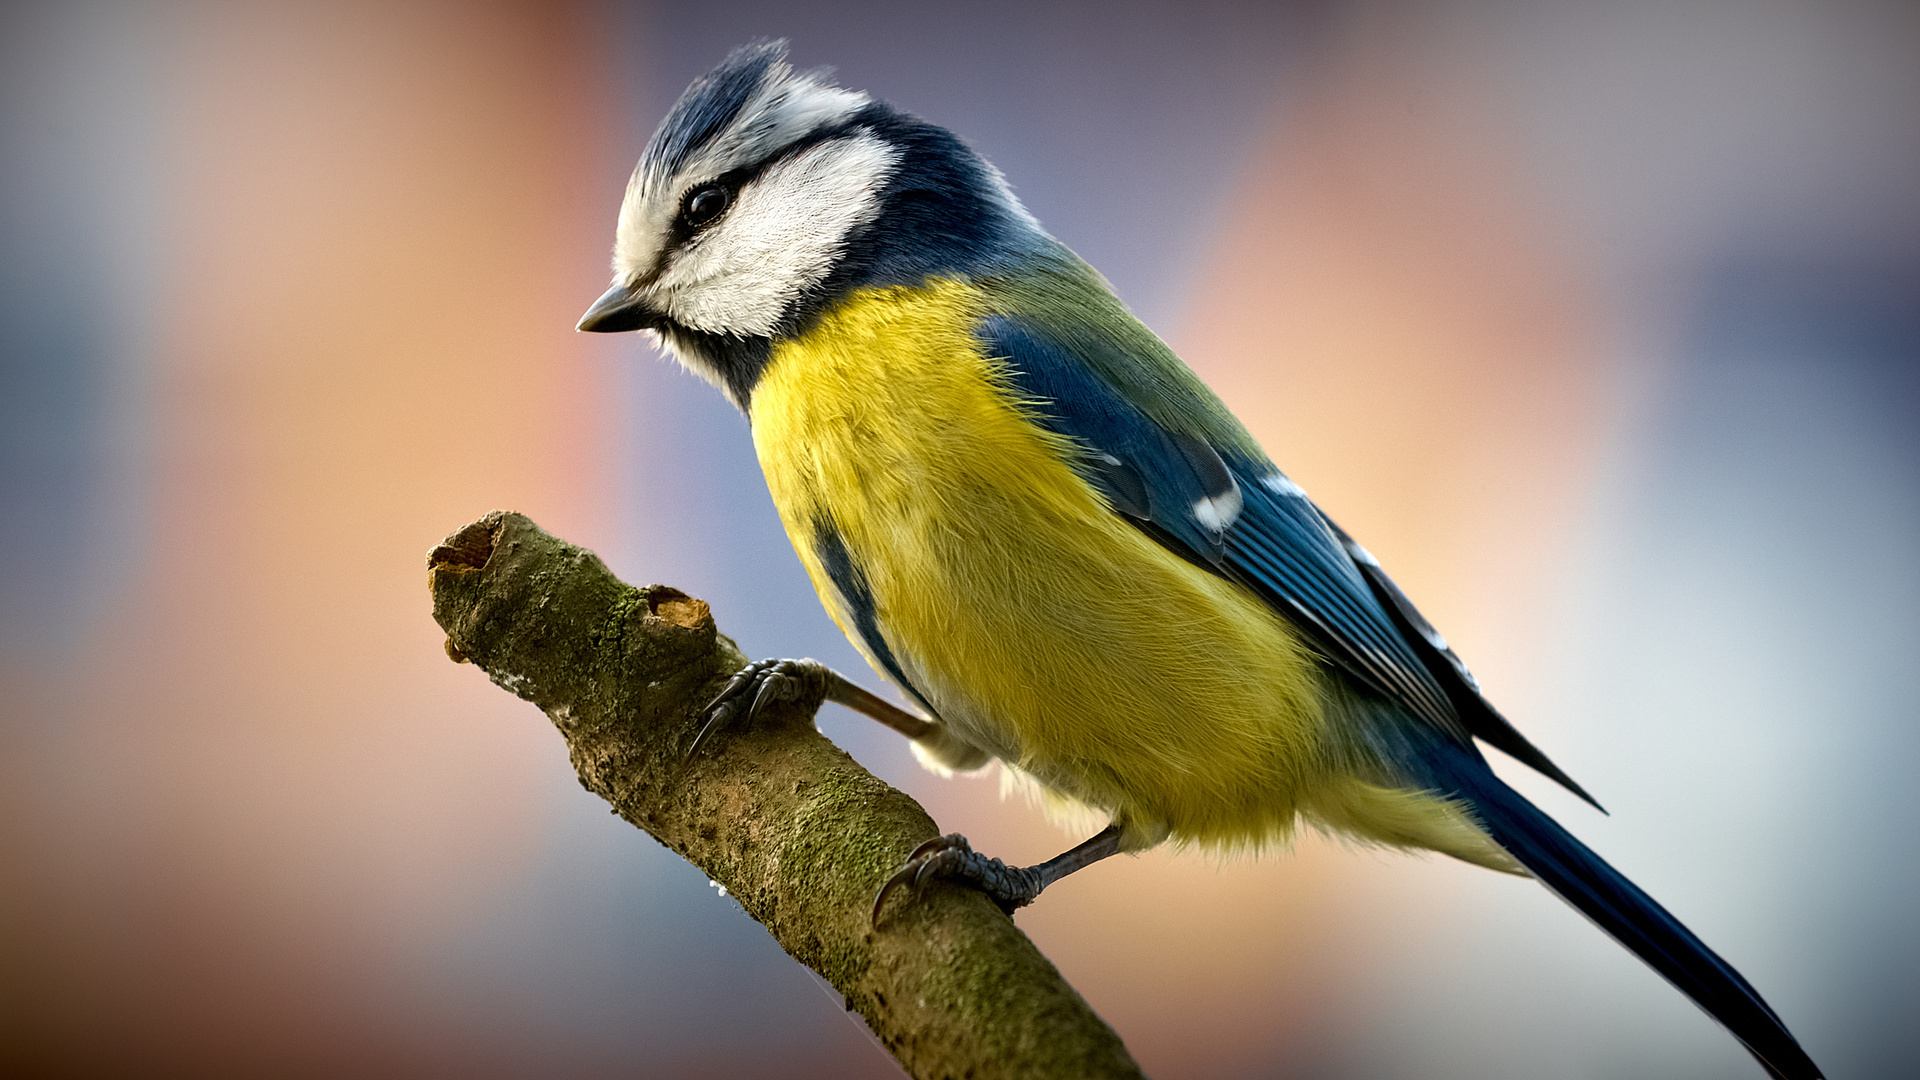 Best Birds Desktop Images